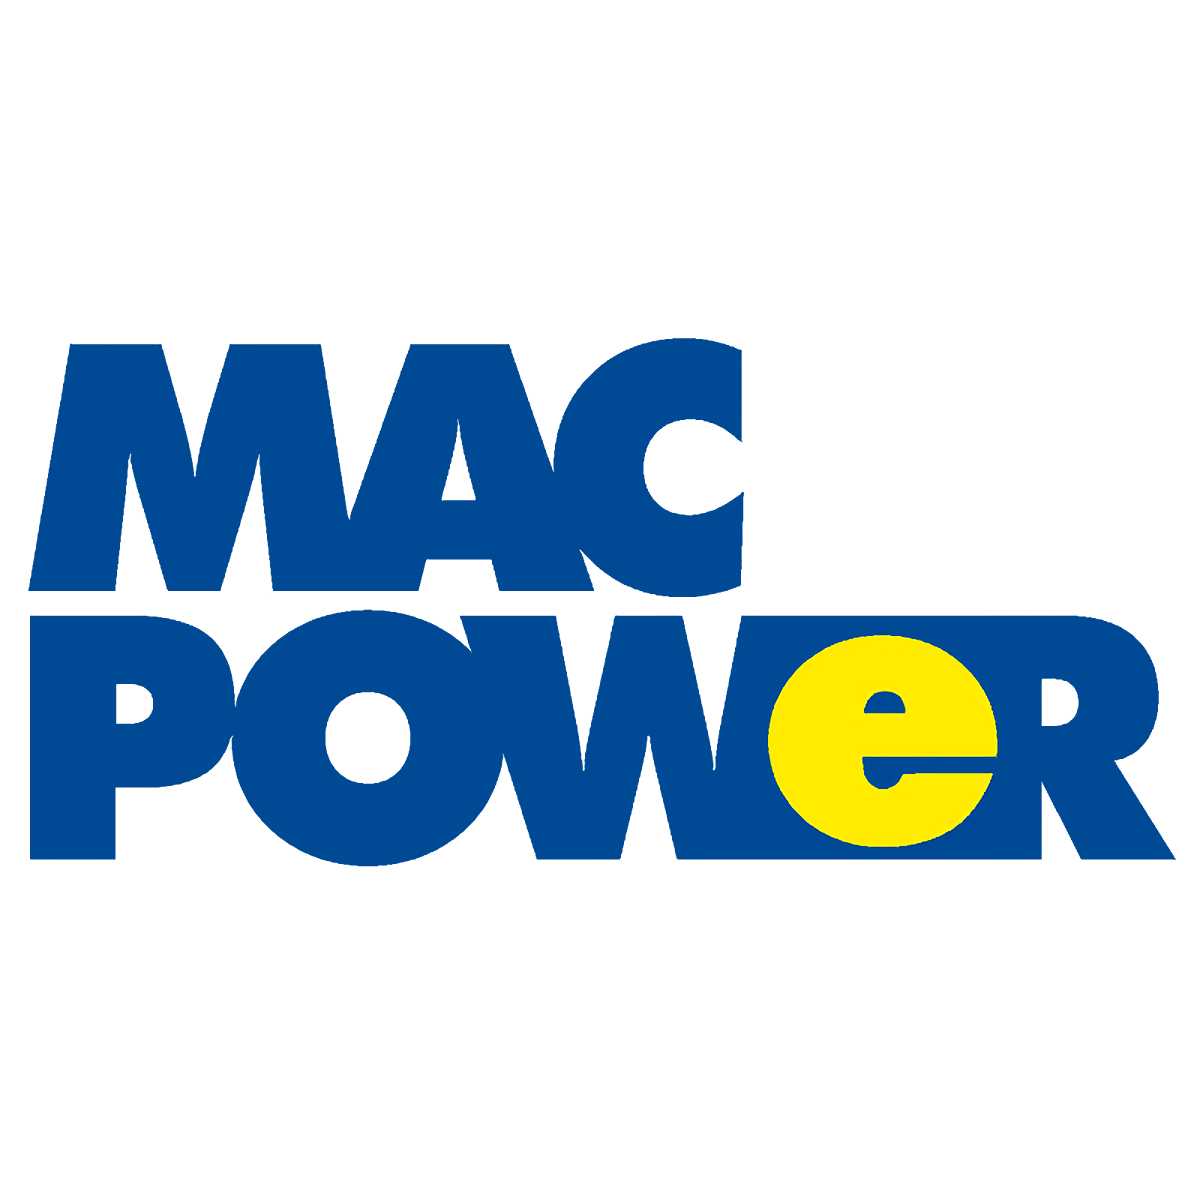 Mac Power